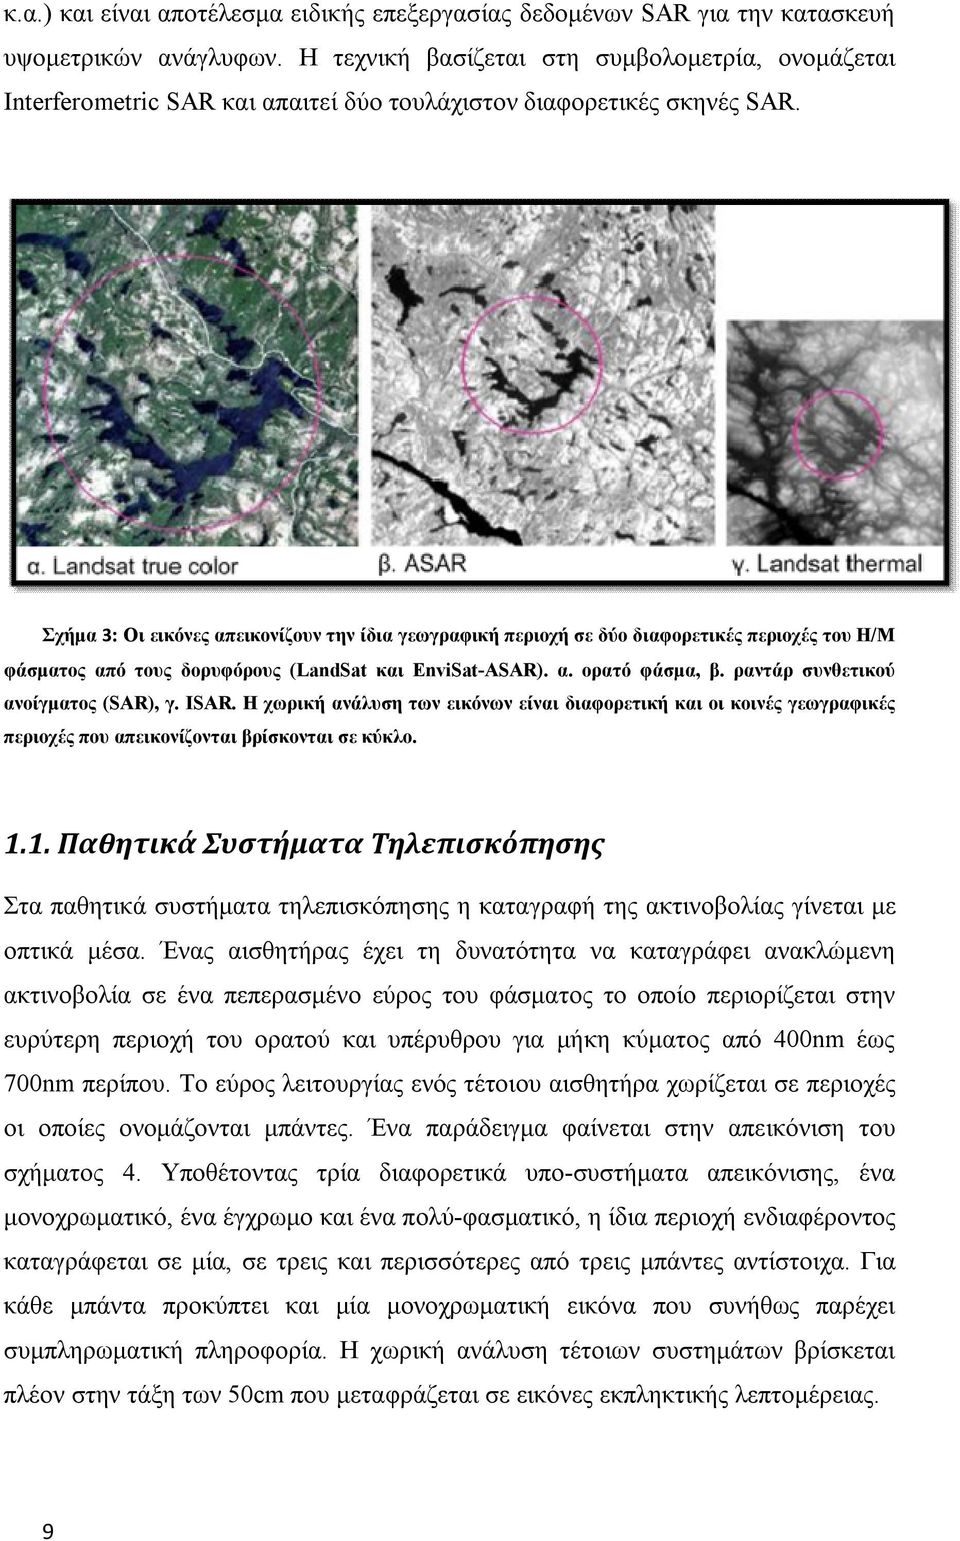 Σχήμα 3: Οι εικόνες απεικονίζουν την ίδια γεωγραφική περιοχή σε δύο διαφορετικές περιοχές του Η/Μ φάσματος από τους δορυφόρους (LandSat και EnviSat-ASAR). α. ορατό φάσμα, β.